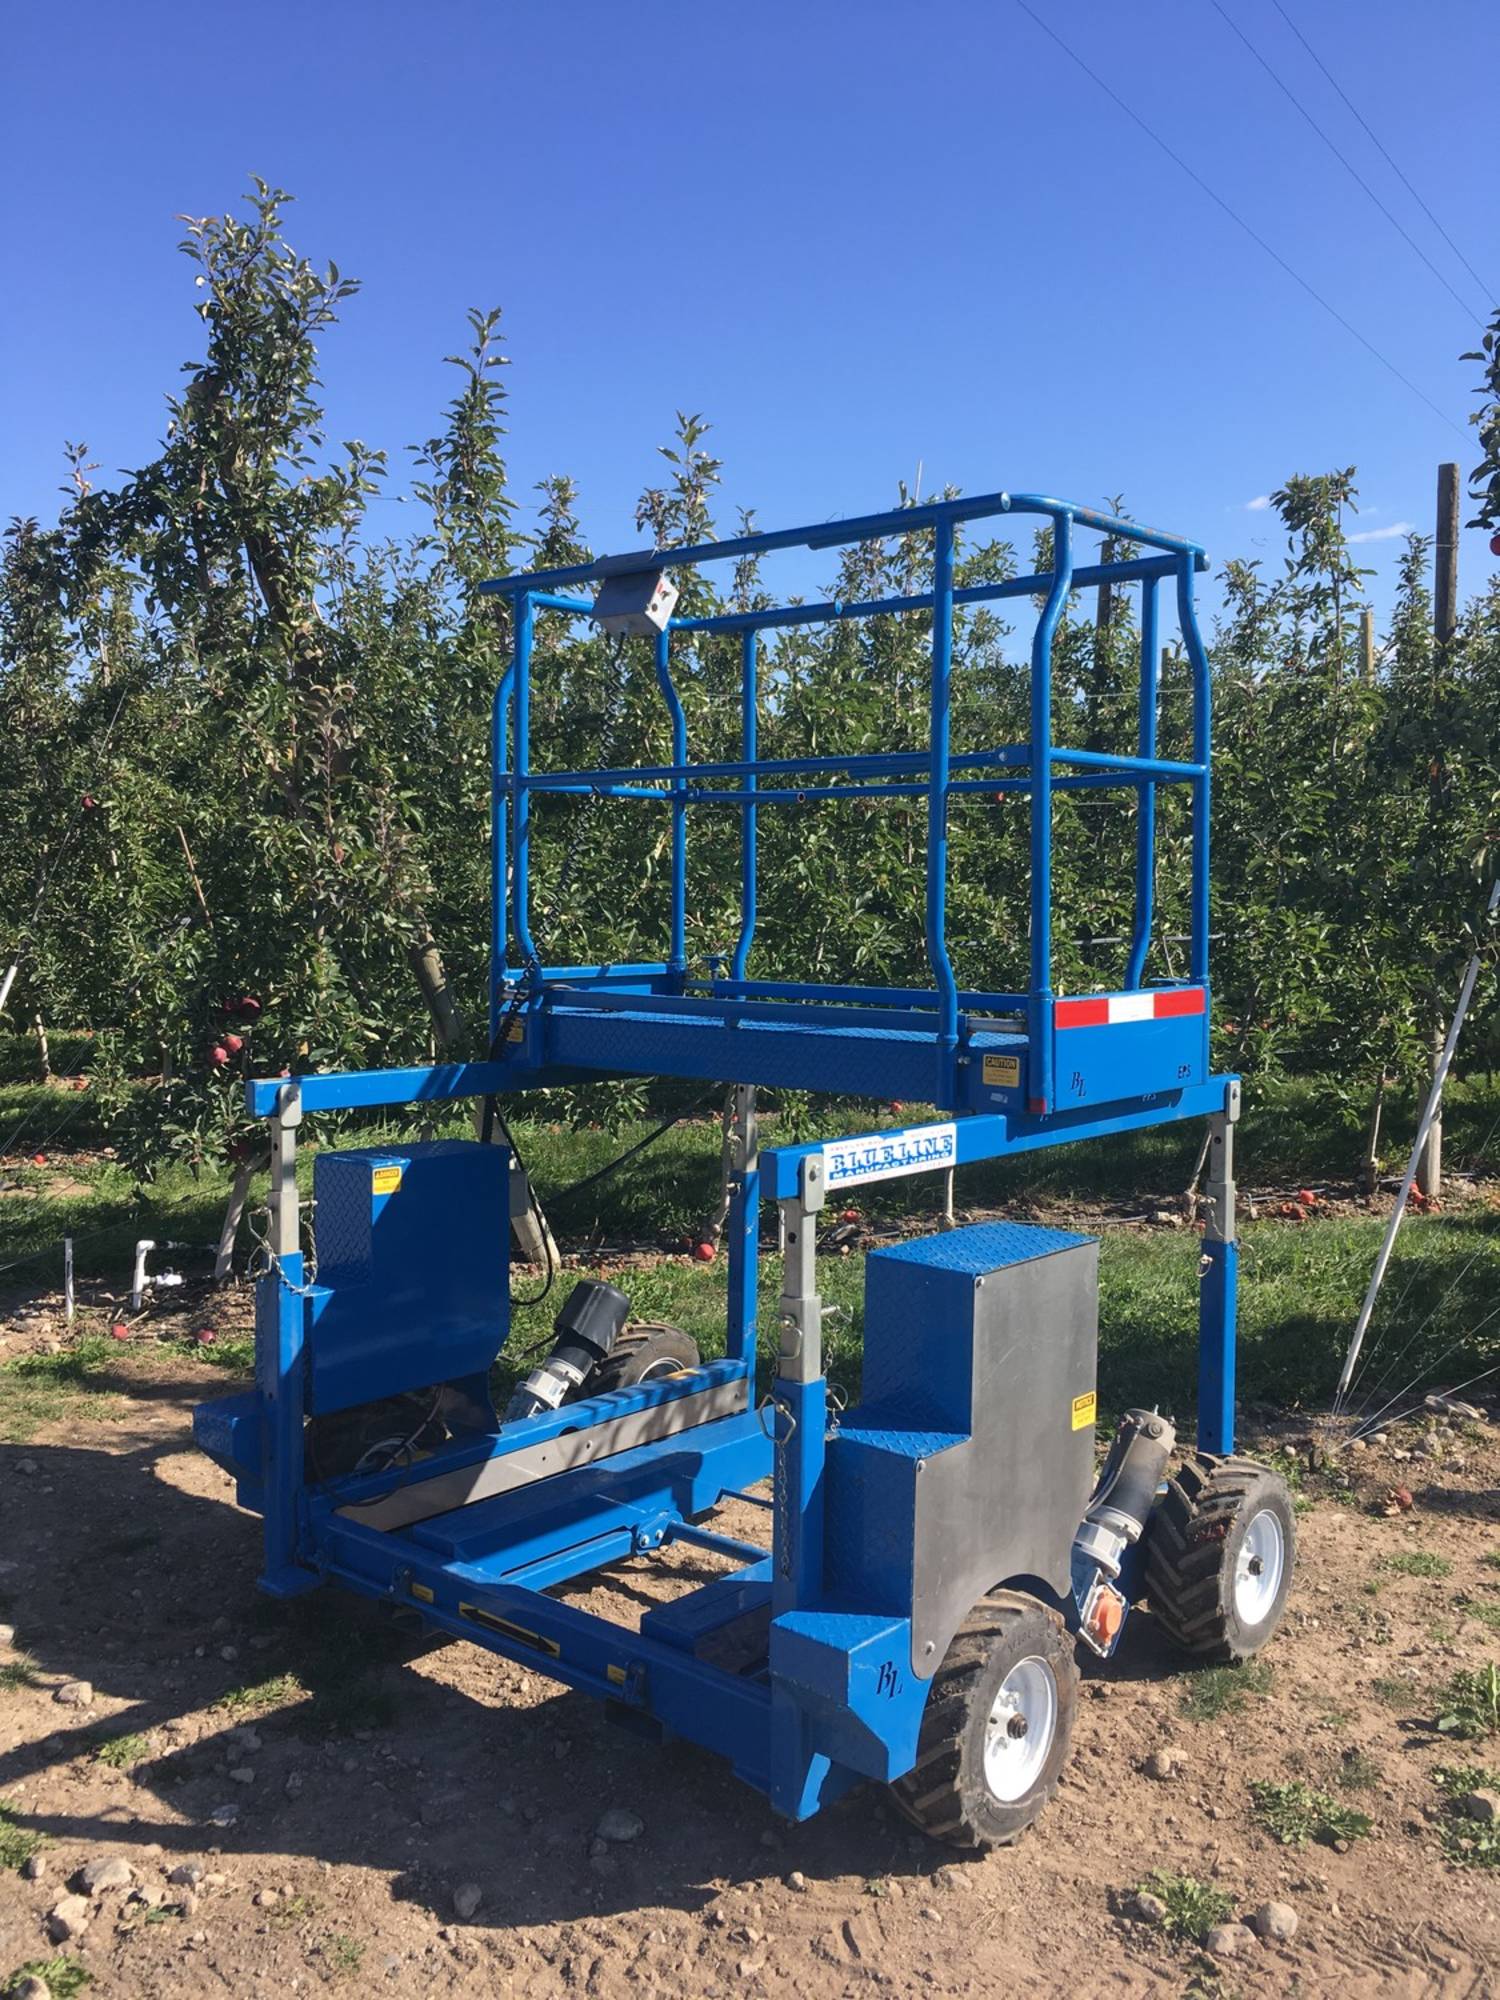 Electric Orchard Harvesting Platform